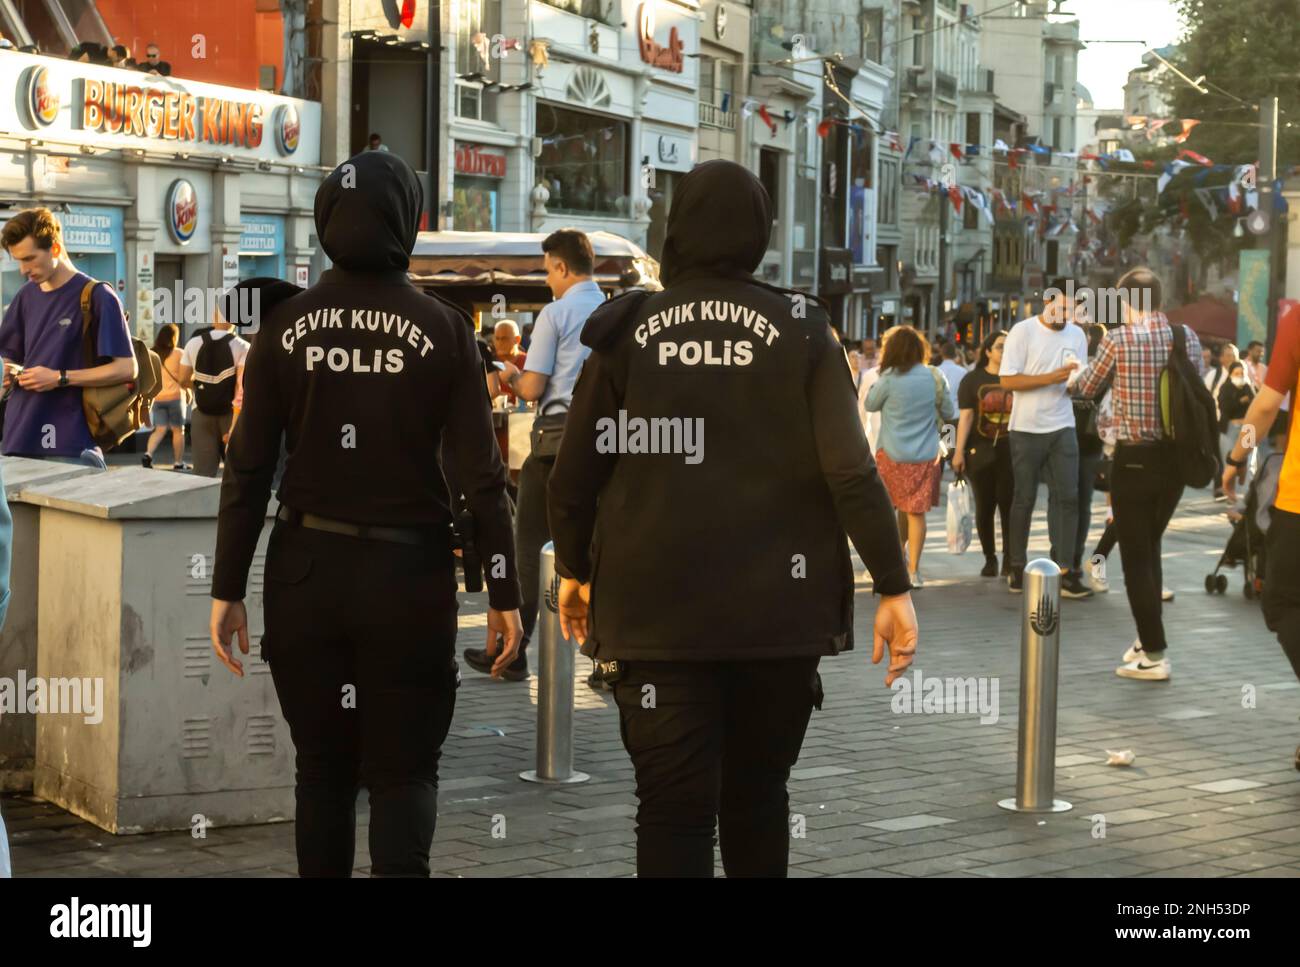 Weibliche Polizisten in schwarzen Burqas, Hijabs in der belebten Istiklal-Straße mit multikulturellen Menschenmengen in Zentral-Istanbul, Türkei Stockfoto